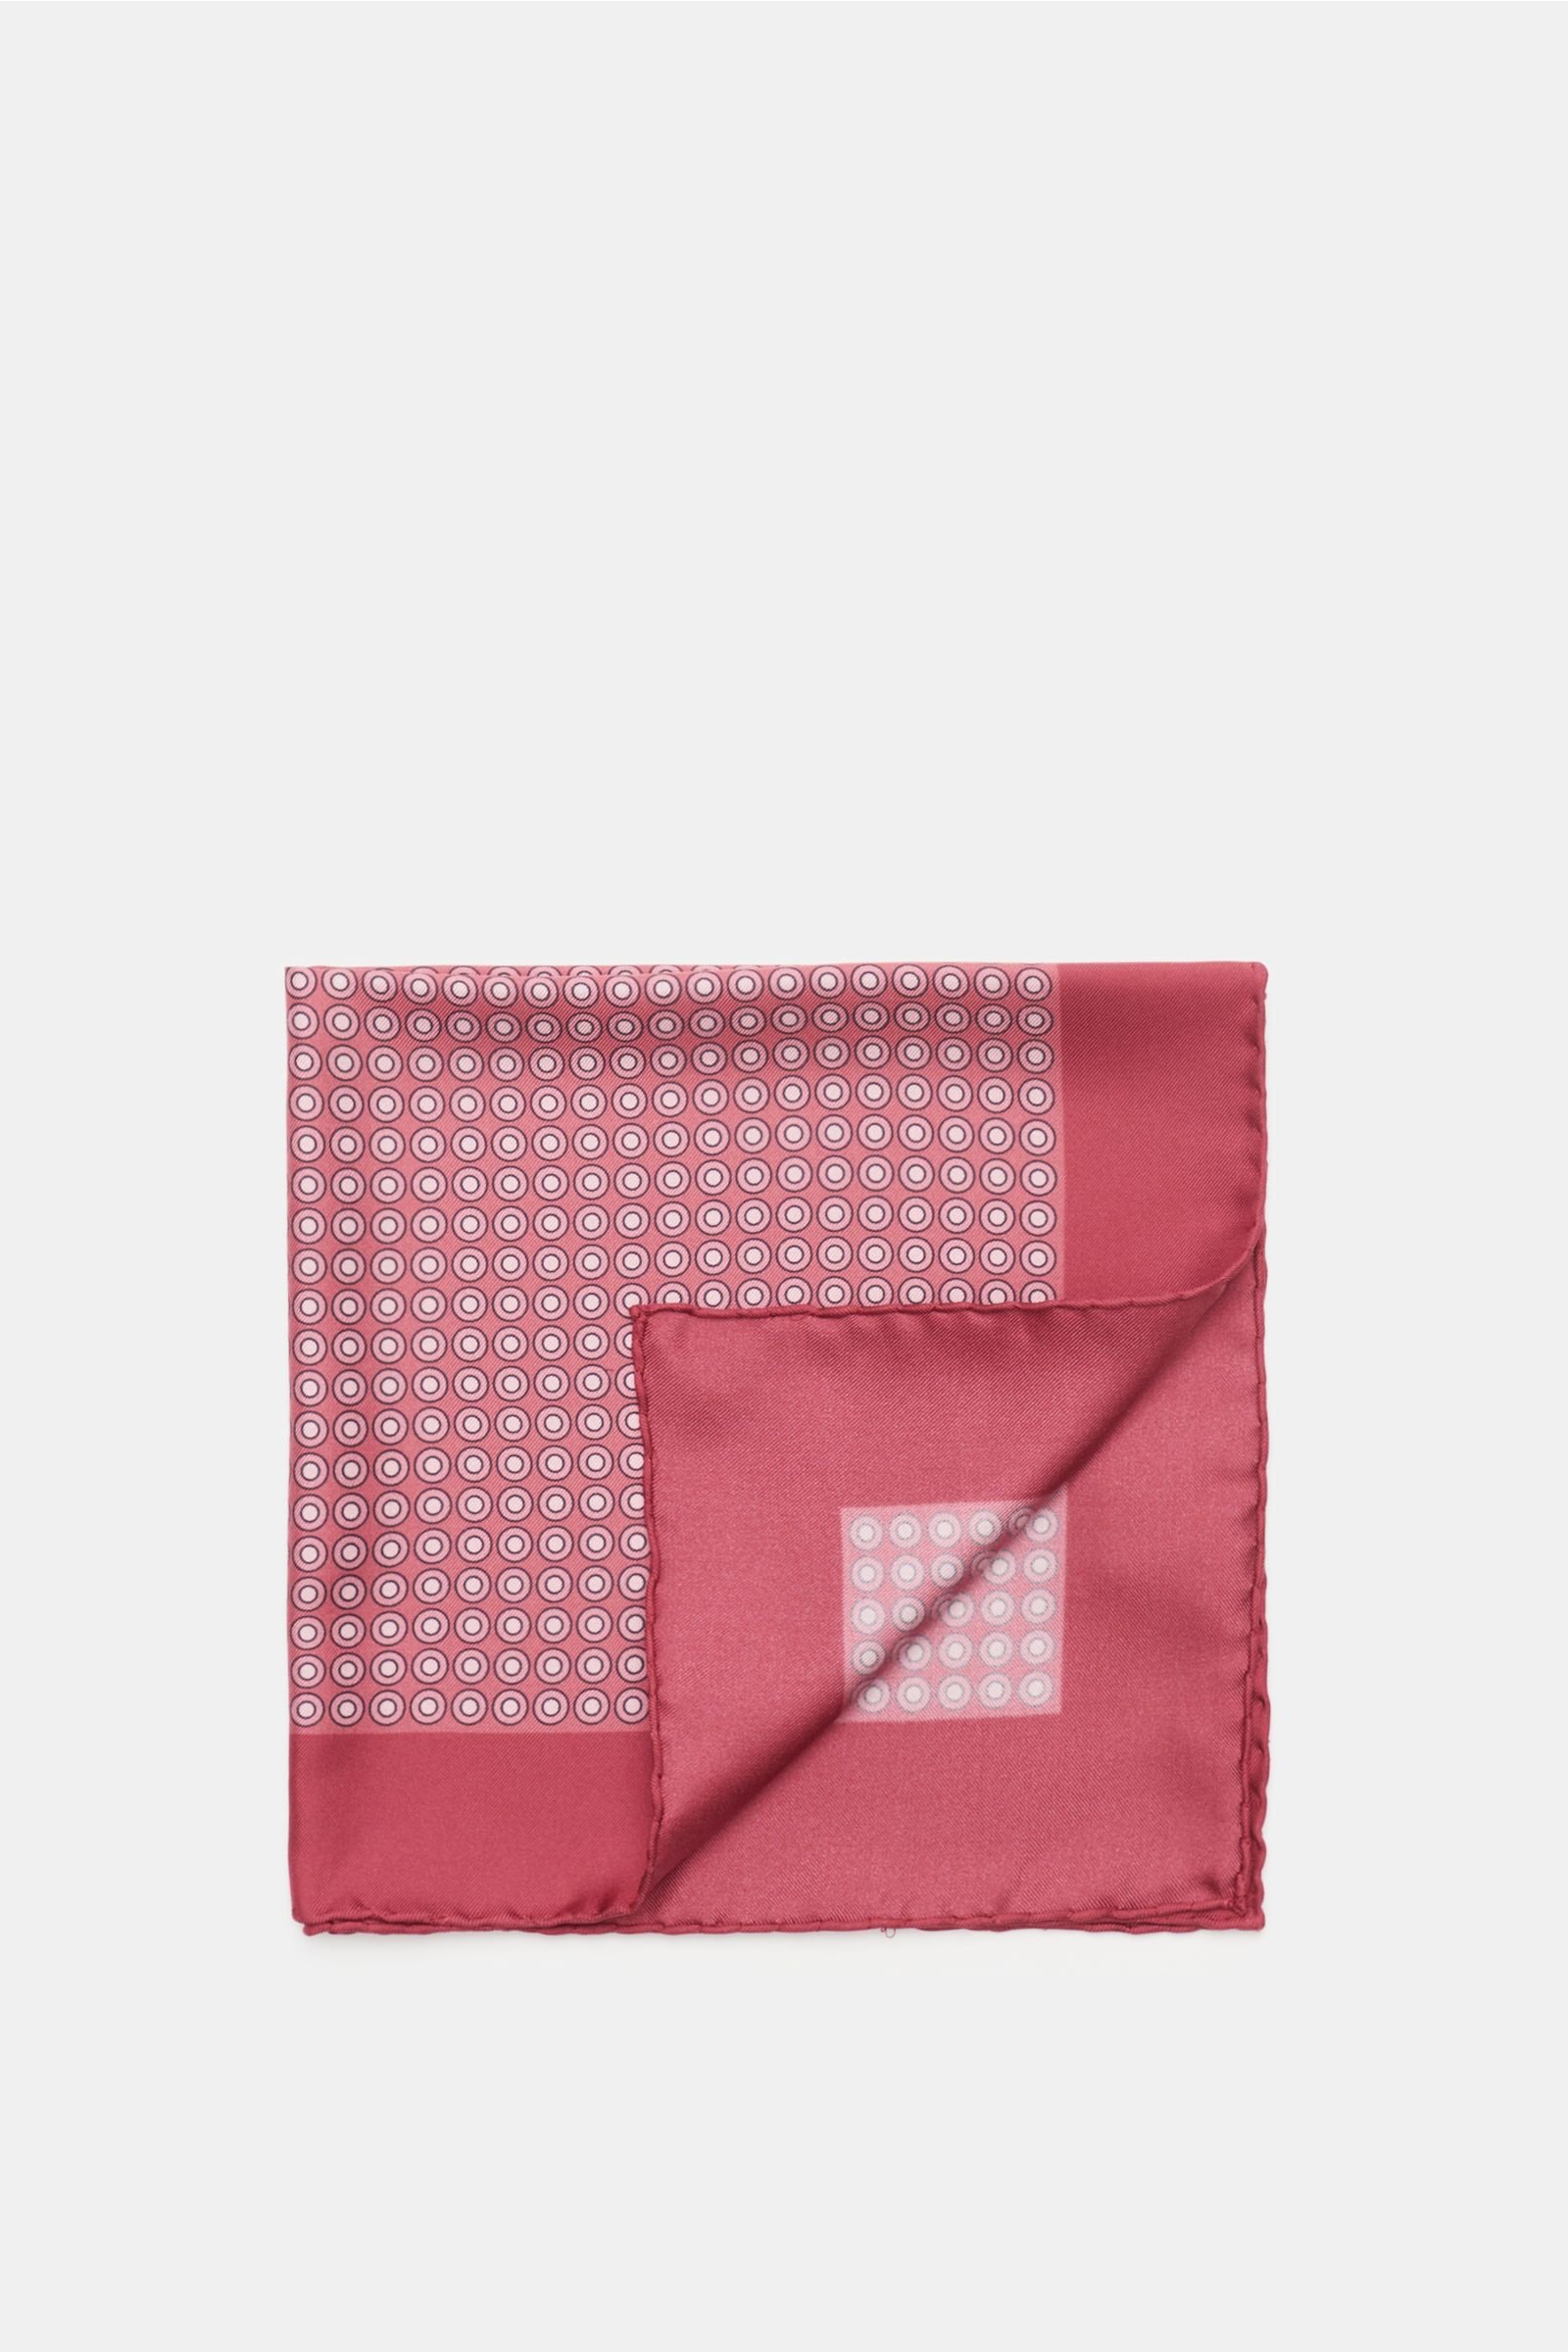 Pocket square burgundy/antique pink dotted